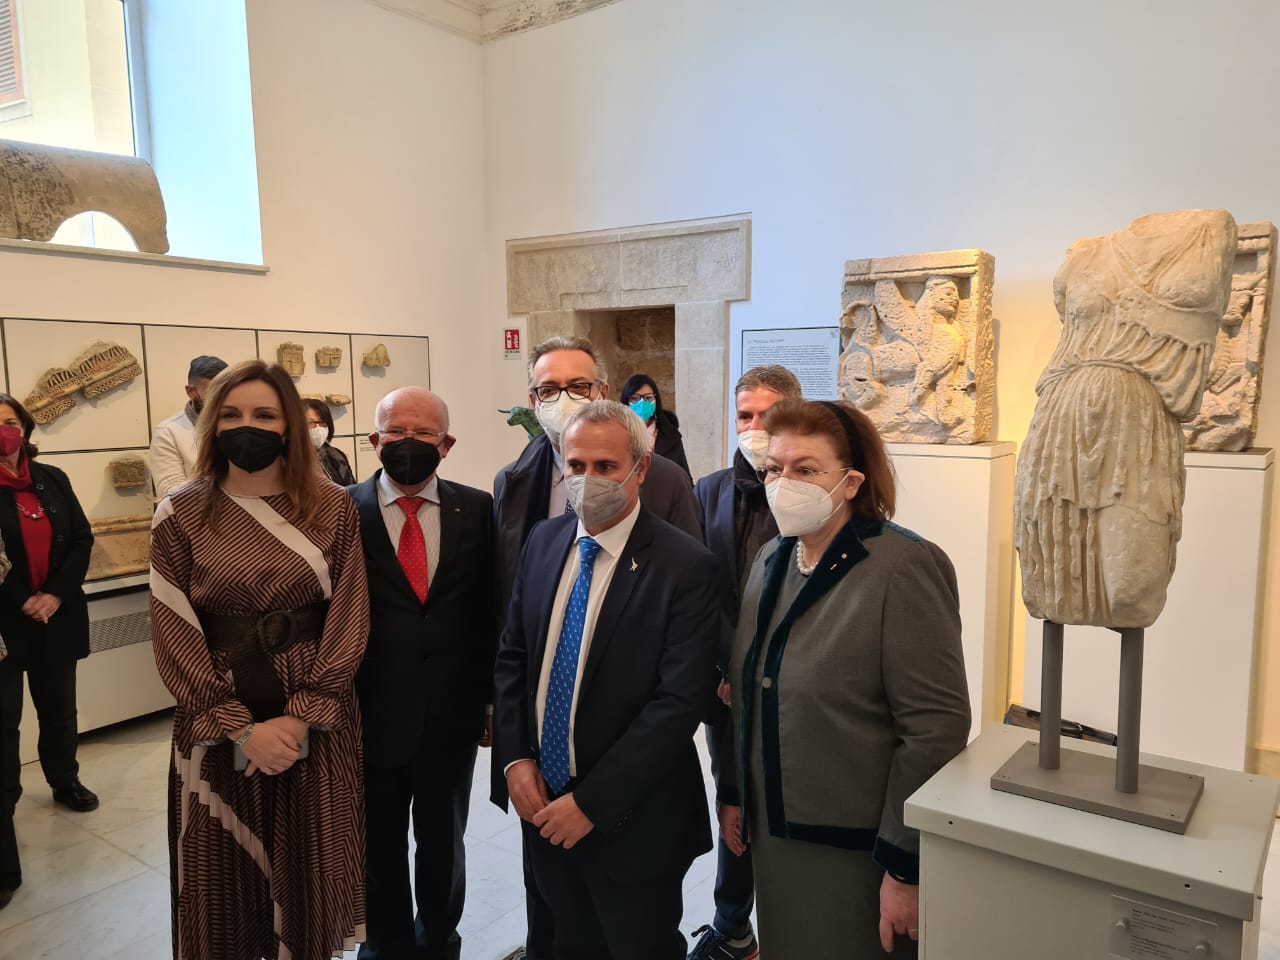 Στο Μουσείο Σαλίνας του Παλέρμο το άγαλμα της Αθηνάς - Ο δρόμος που καλείται να ακολουθήσει και η Βρετανία